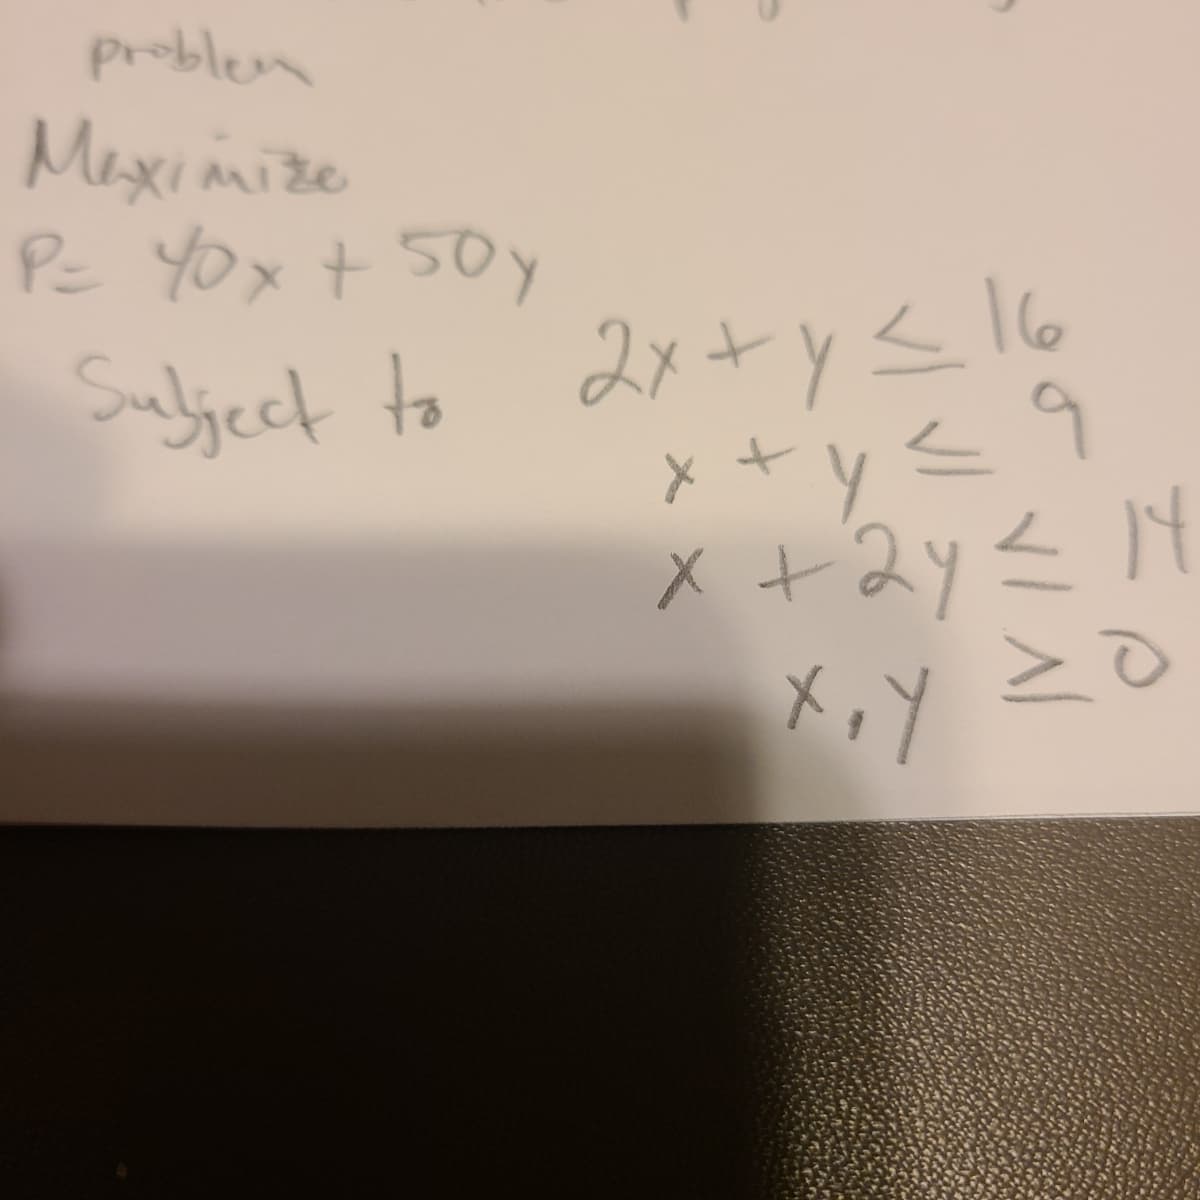 problem
Maximize
Pc YOx t 50y
Sulject to 2x+ y< l6
メ+2y< M
